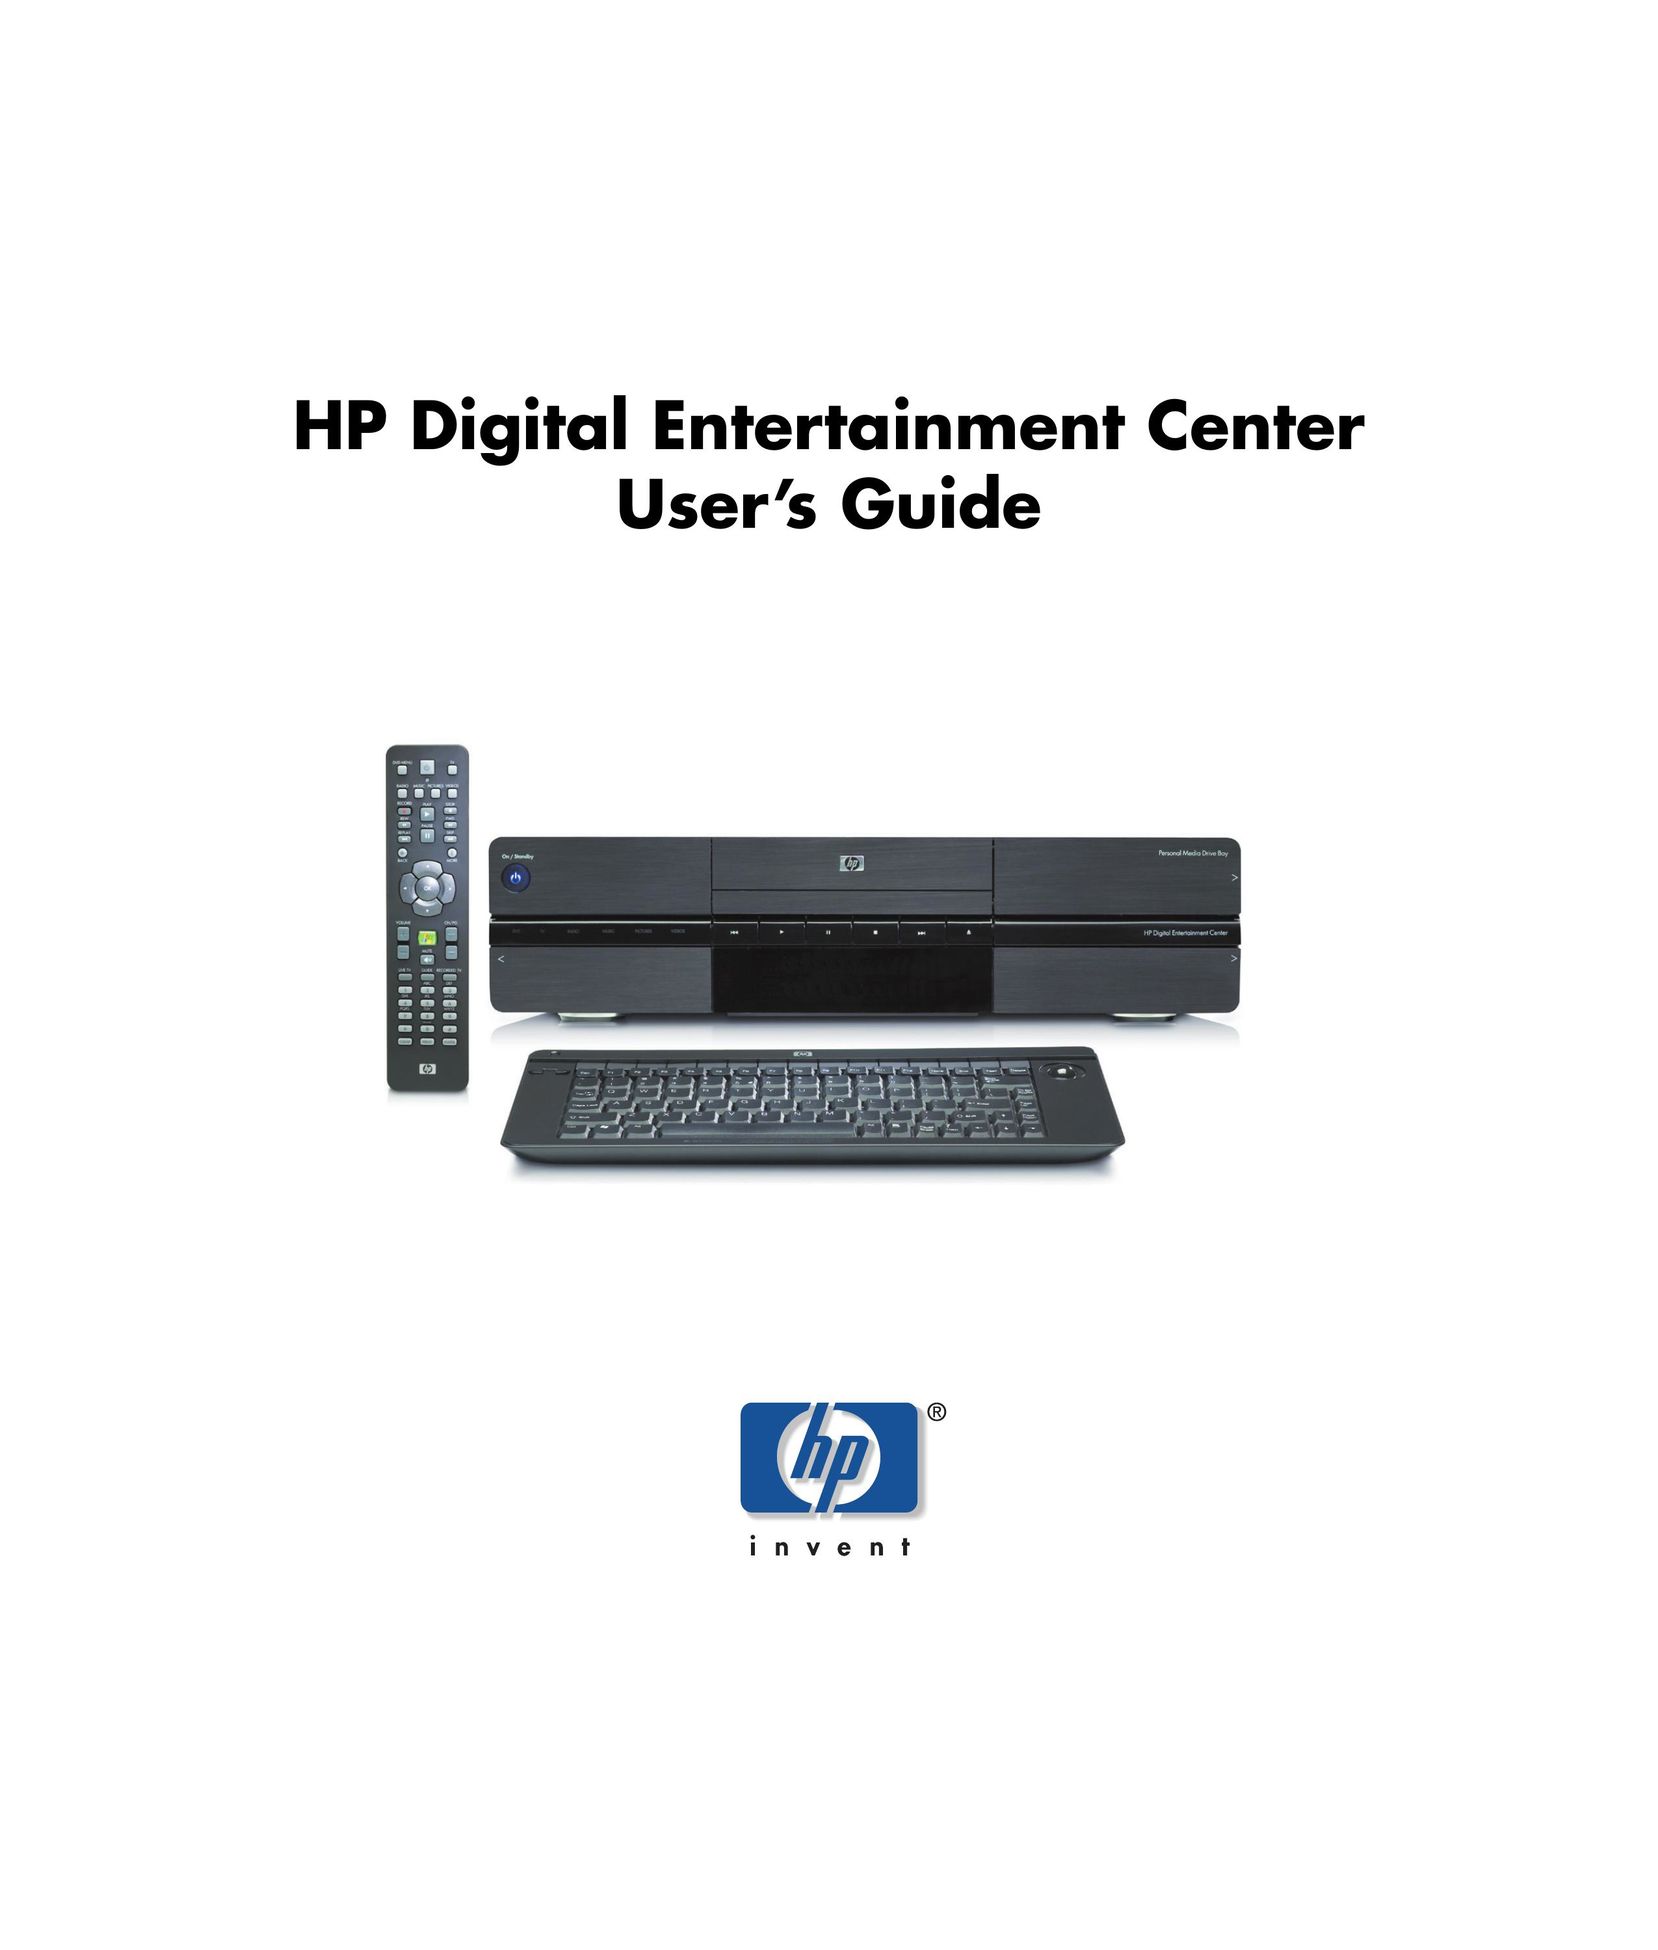 HP (Hewlett-Packard) Digital Entertainment Center Home Theater System User Manual